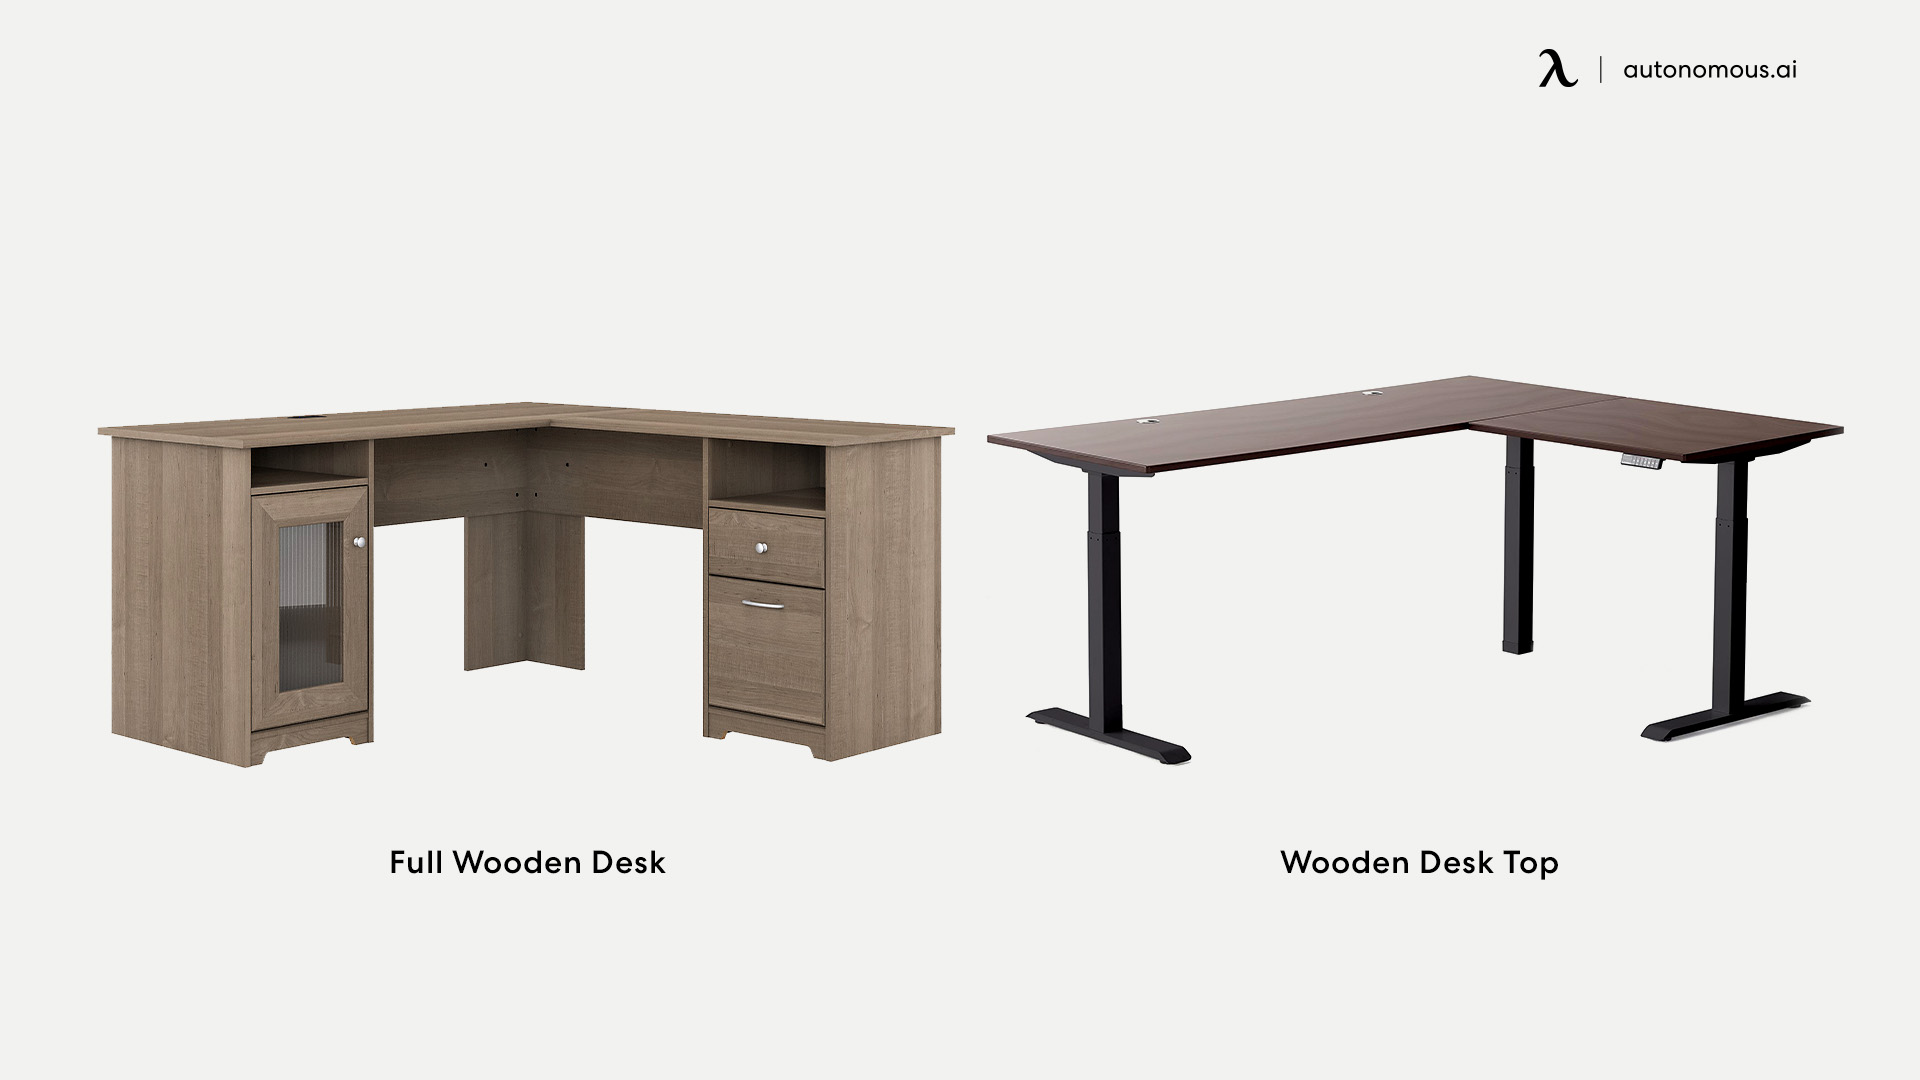 Full Wooden Desk Vs. Wooden Desk Top